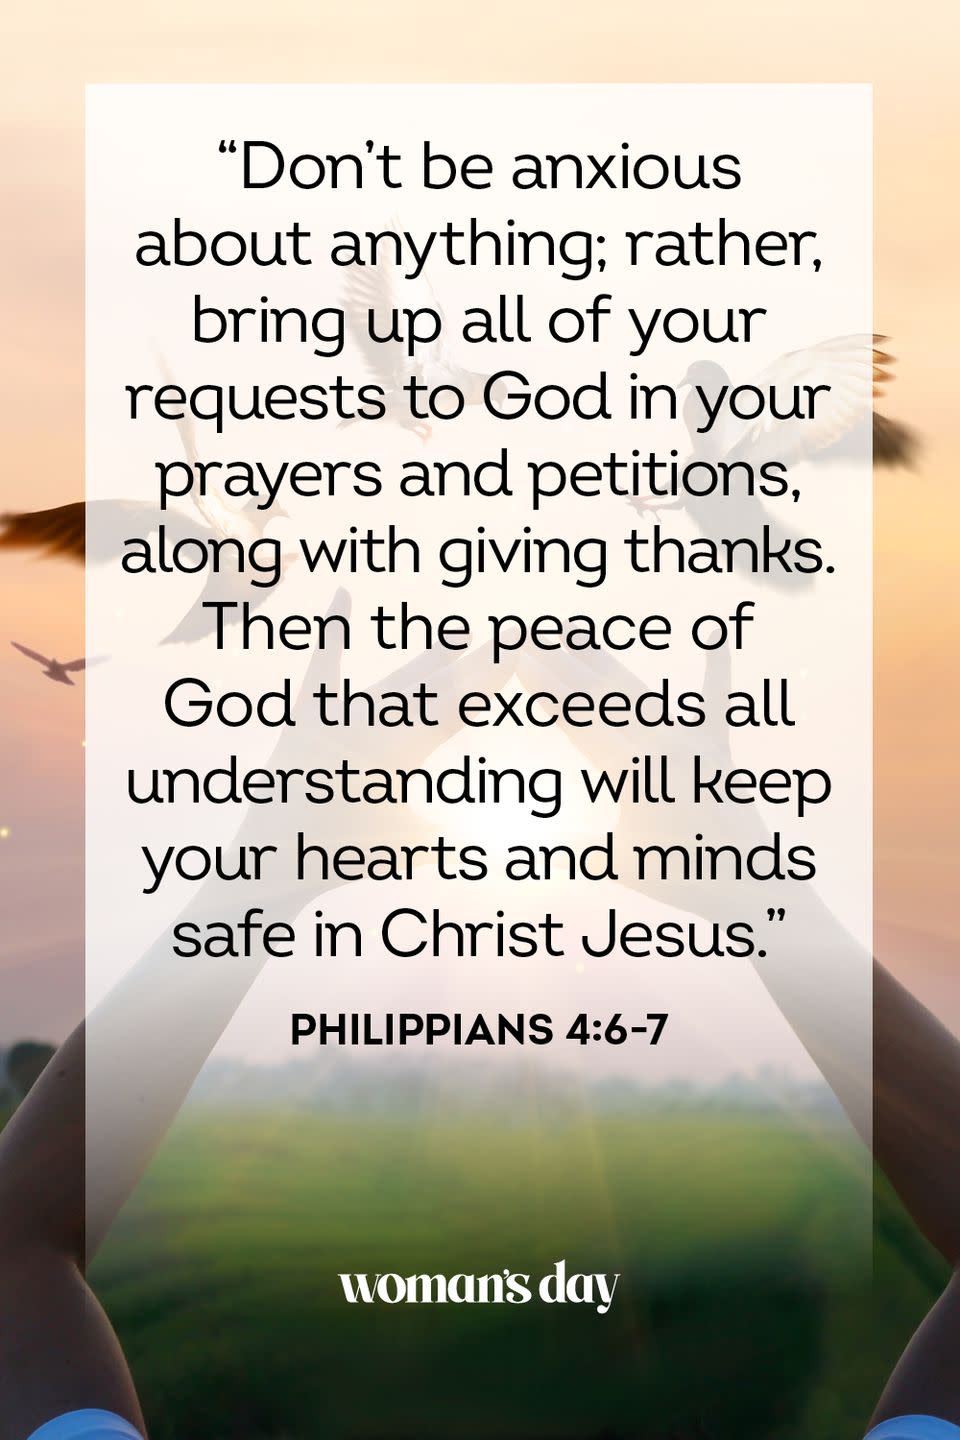 30) Philippians 4:6-7